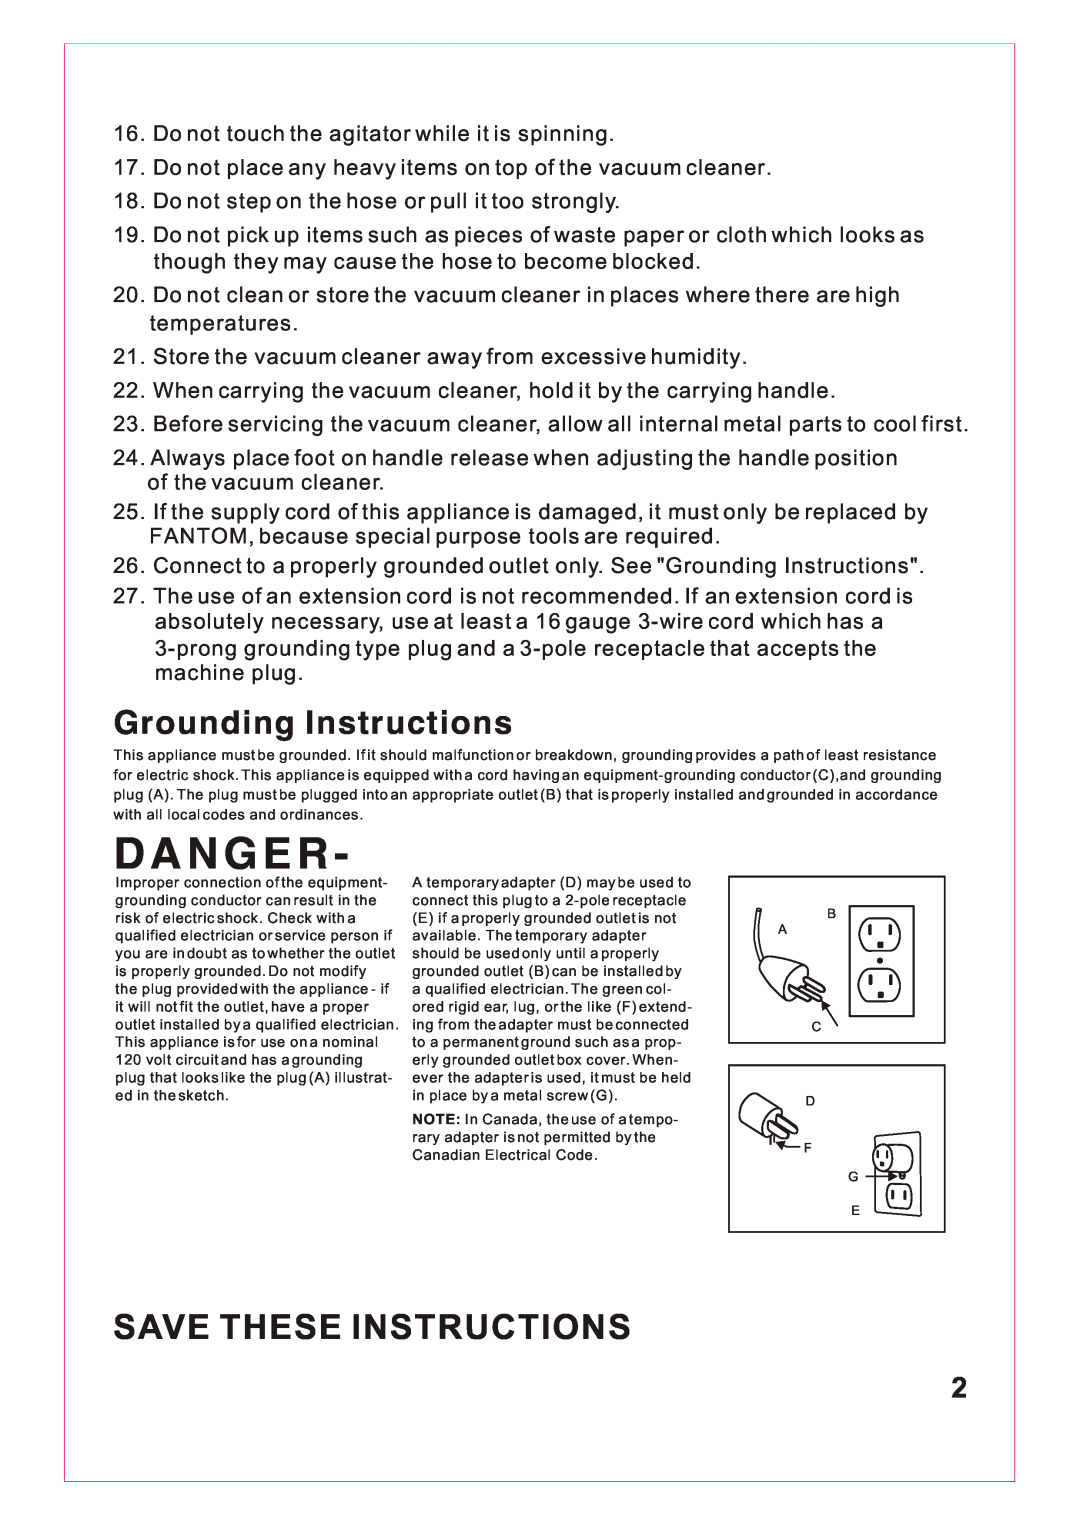 Fantom Vacuum FM766 instruction manual D A N G E R, Save These Instructions, Grounding Instructions 